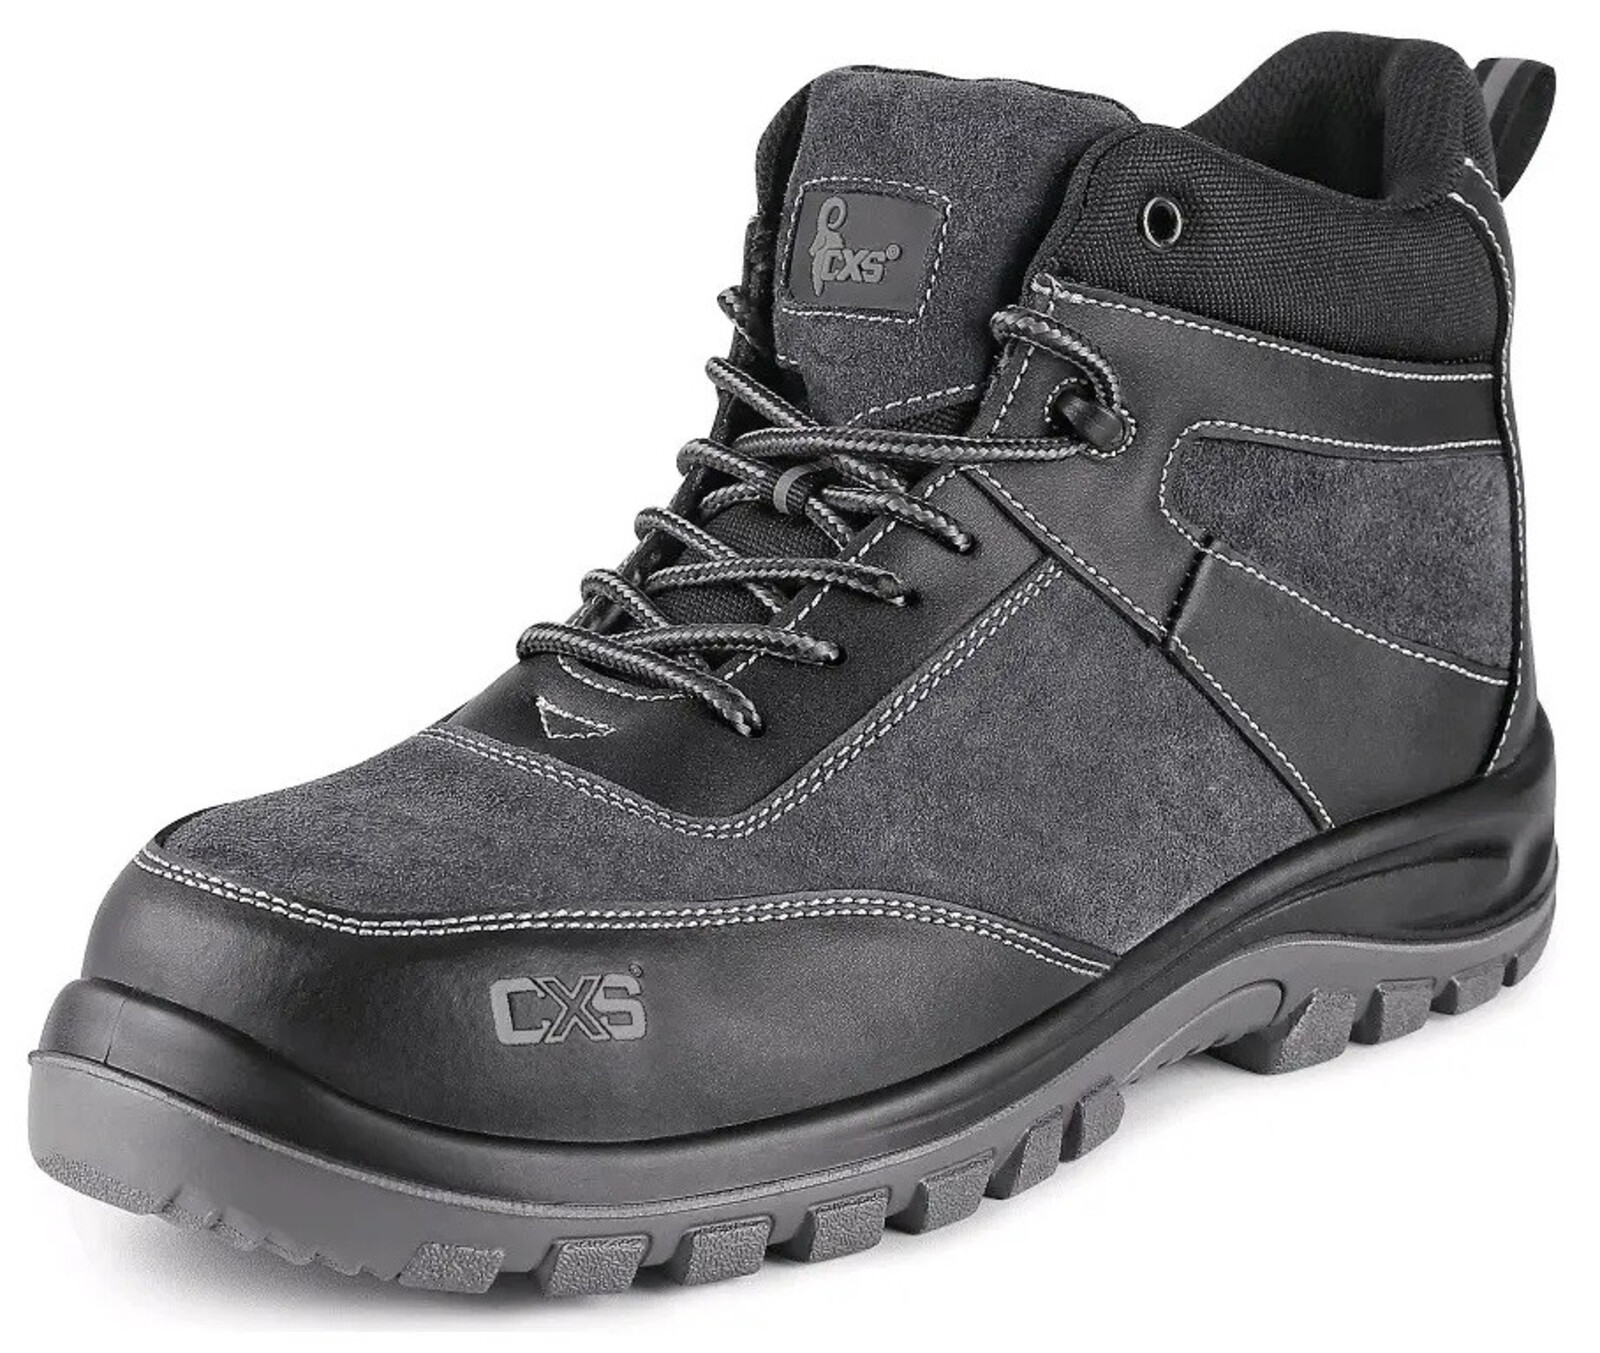 Bezpečnostná členková obuv CXS Profit Top S1P SRC - veľkosť: 37, farba: čierna/sivá